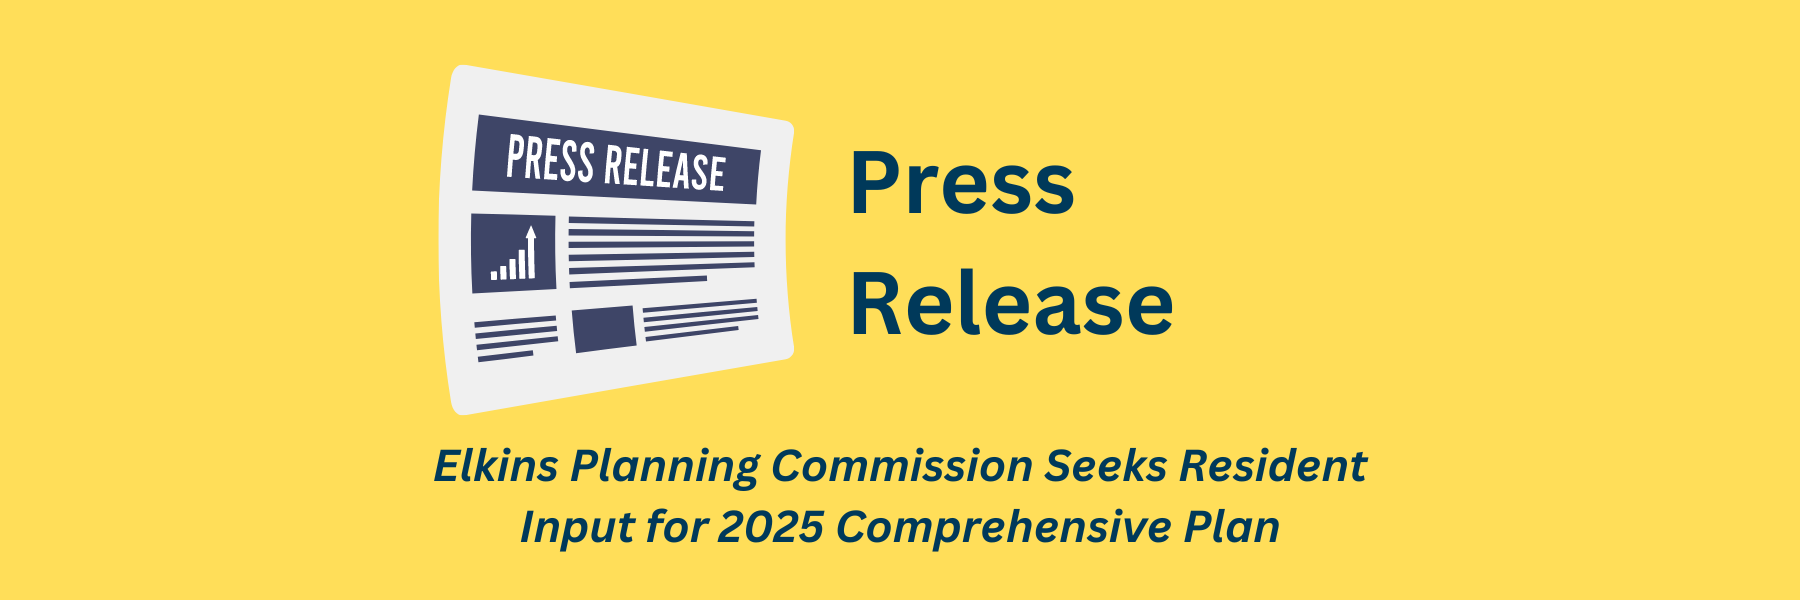 Elkins Planning Commission Seeks Resident Input for 2025 Comprehensive Plan